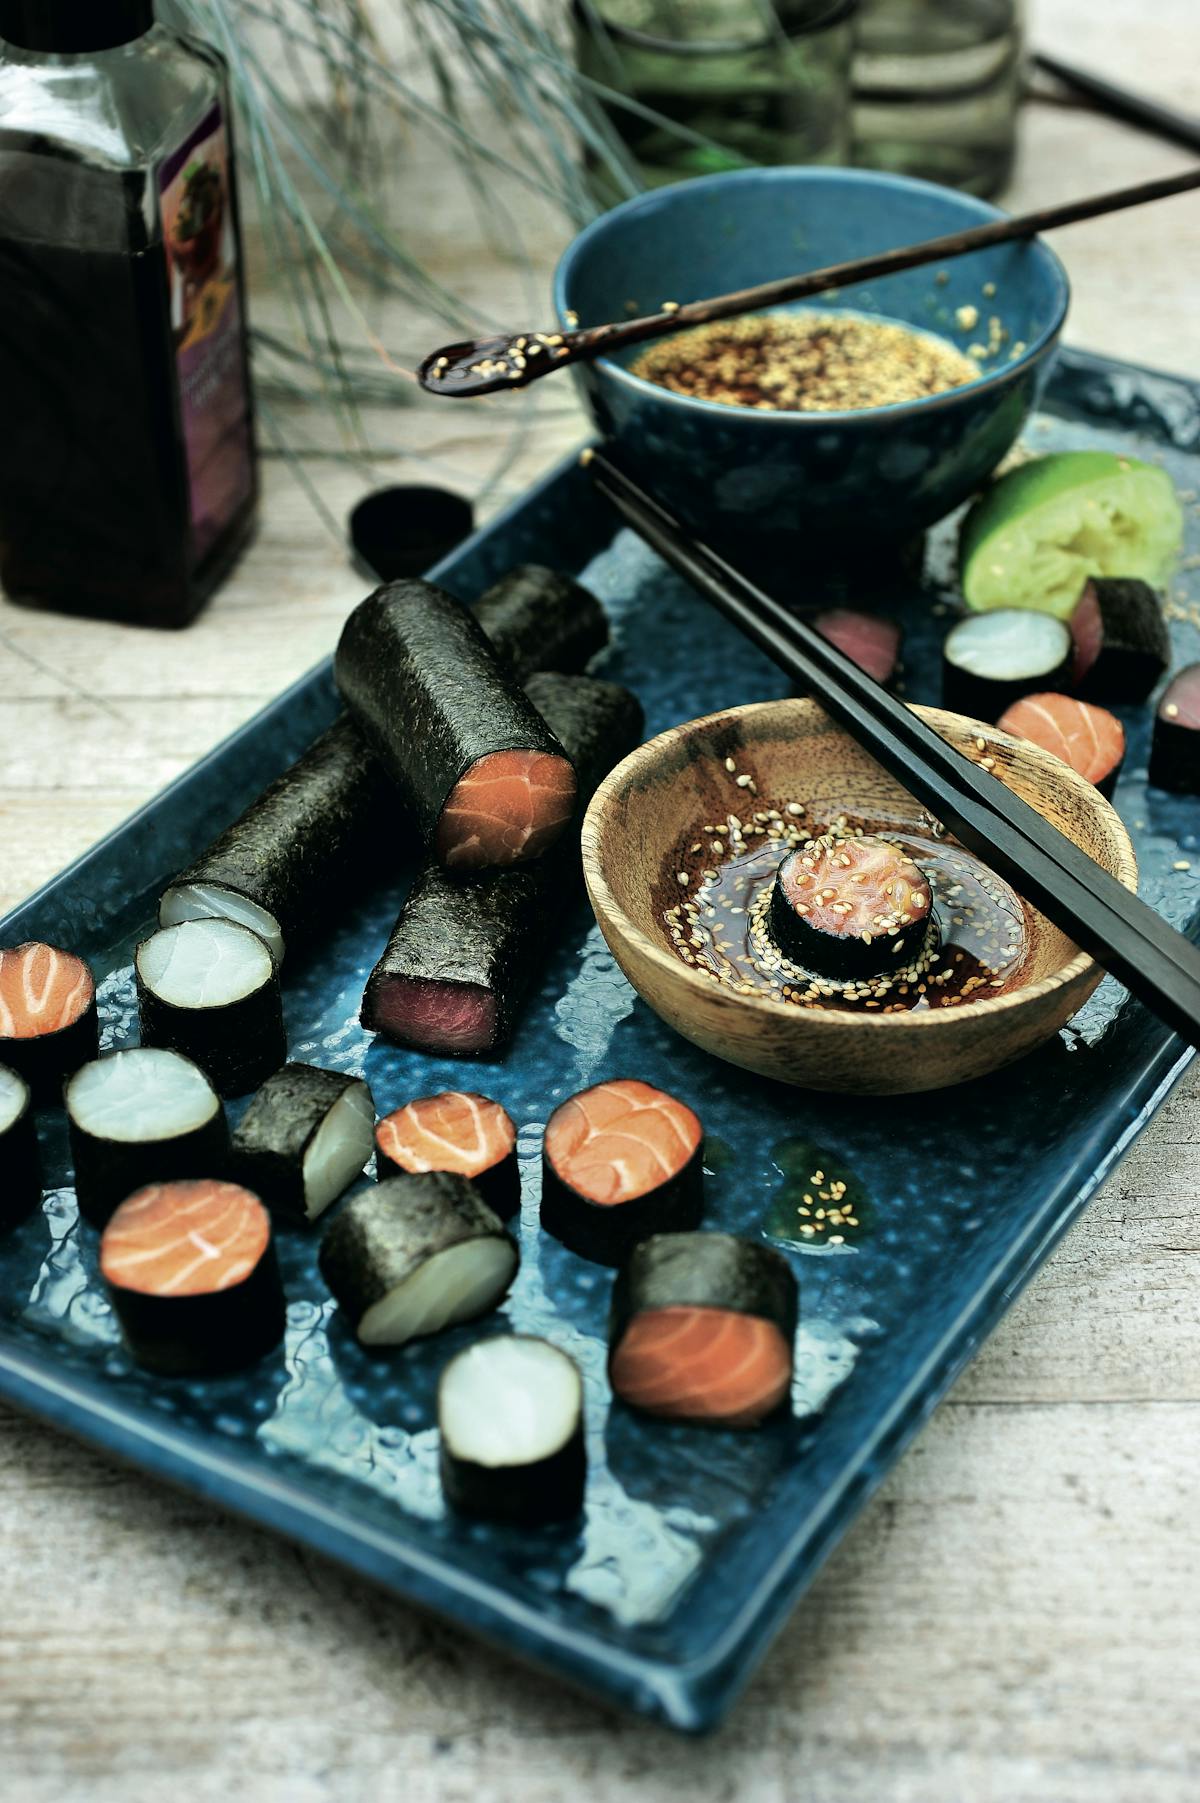 Sashimi rolls